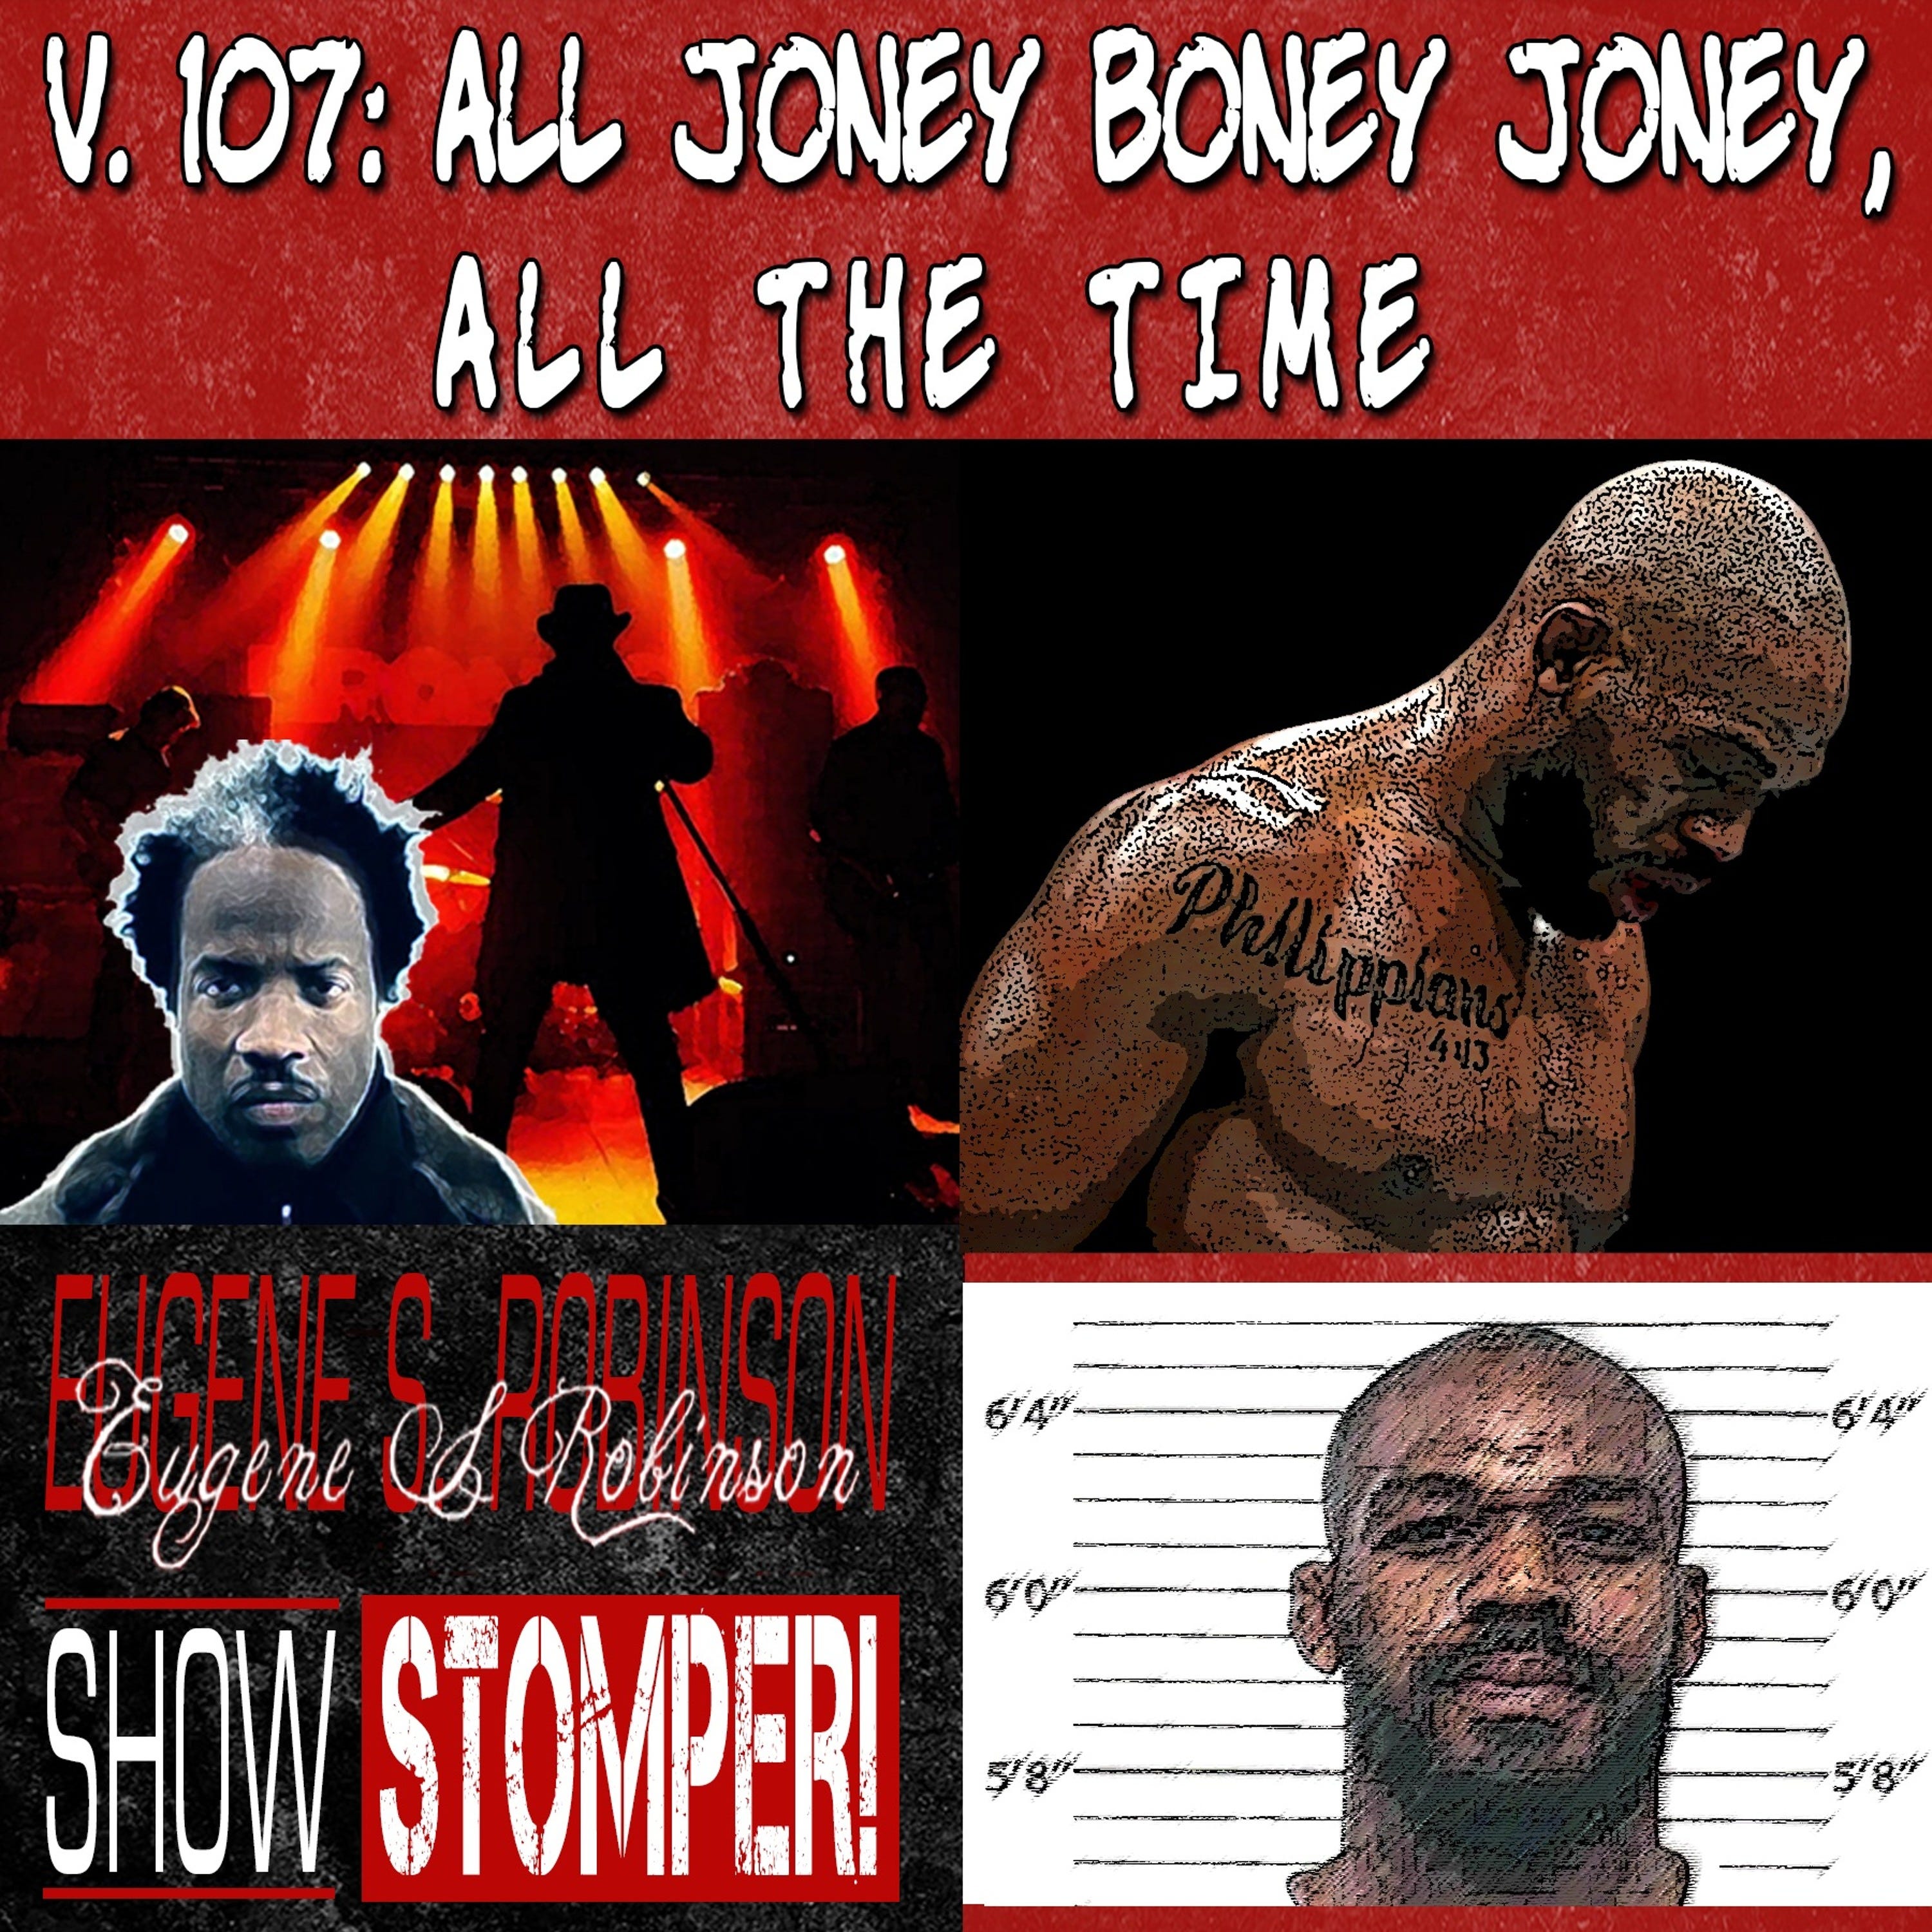 V. 107 All Joney Boney Joney, All The Time On The Eugene S. Robinson Show Stomper!